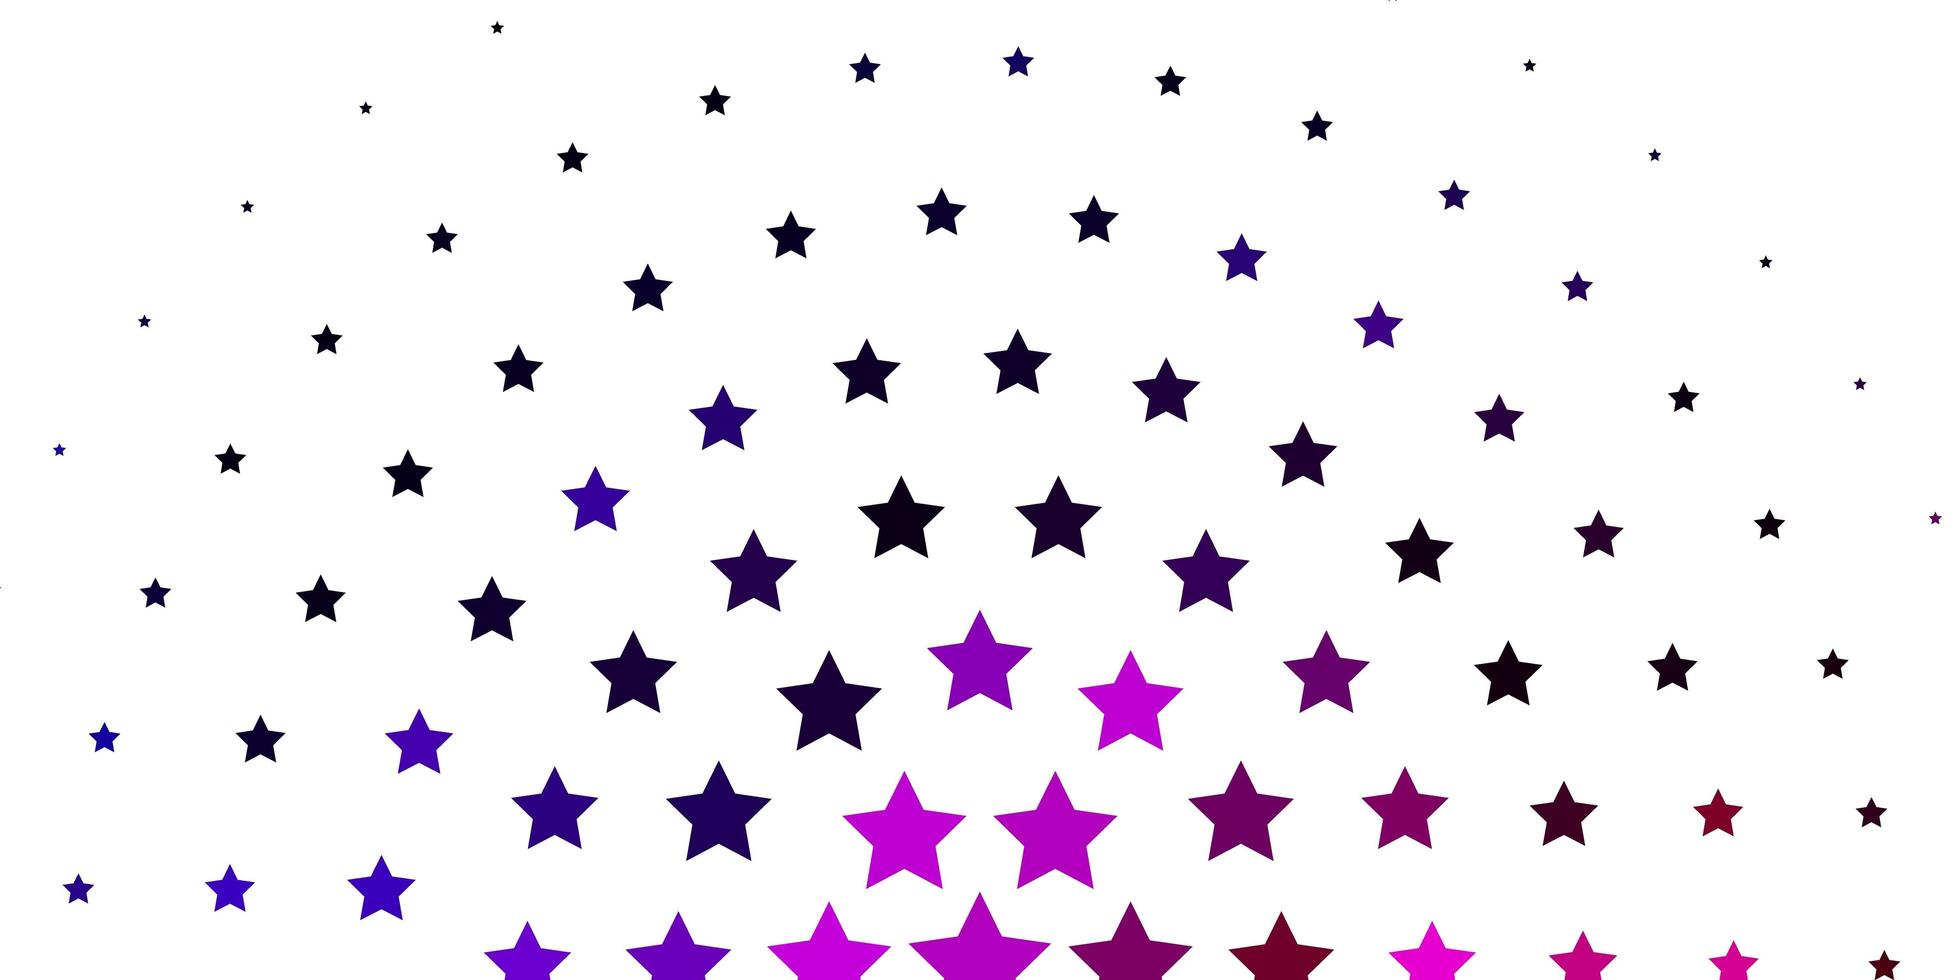 diseño de vector de color púrpura claro, rosa con estrellas brillantes. colorida ilustración en estilo abstracto con estrellas de degradado. diseño para la promoción de su negocio.